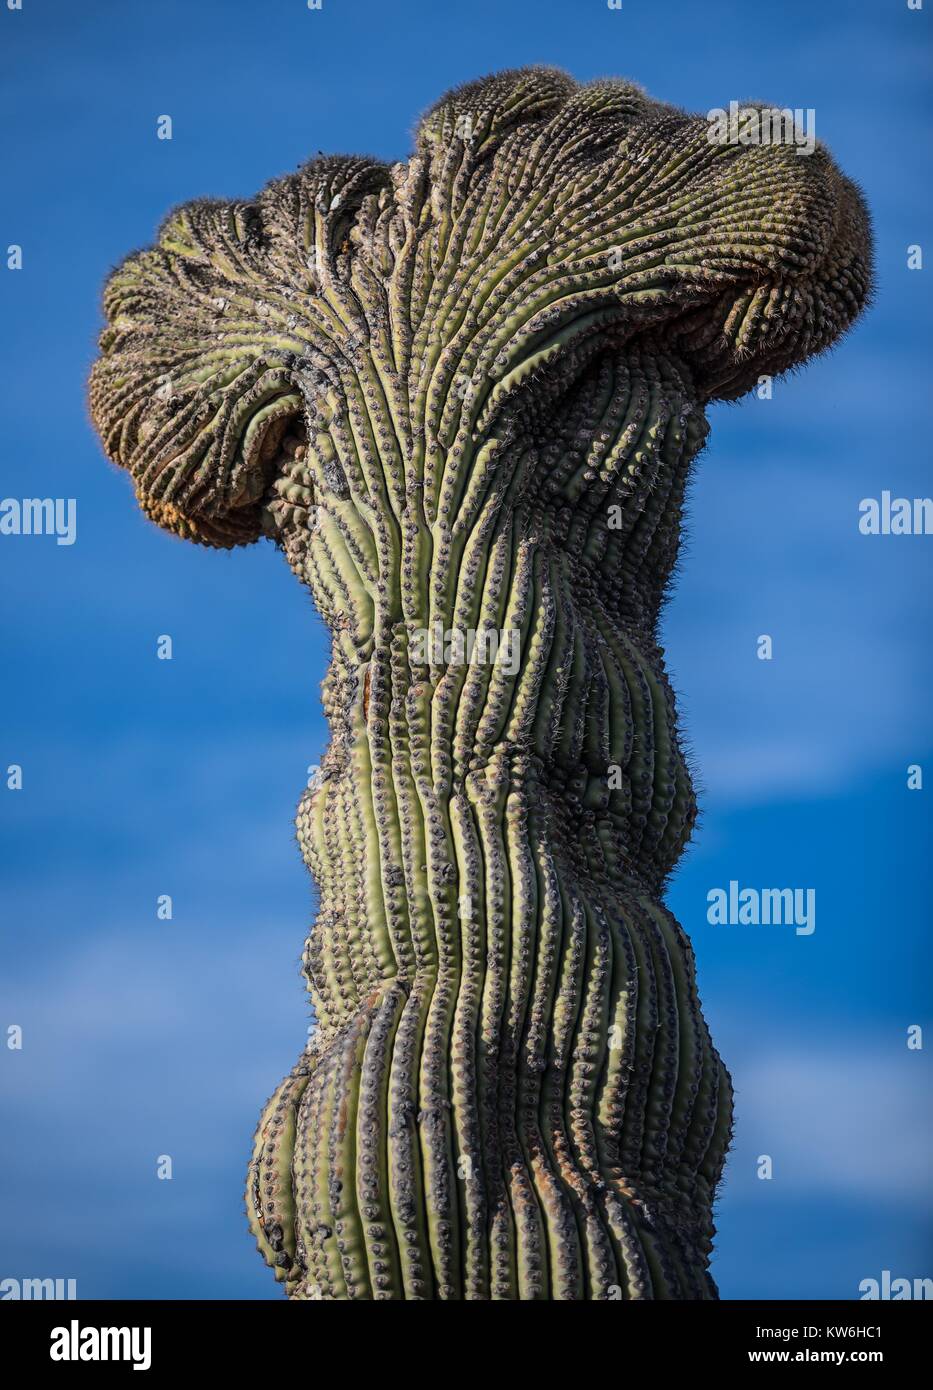 Las mejores de Cactus que formaparte de un Bosque de Sahuaros y Matorral espinoso Demas y especies de Vulcanus característicos de Los Valles, planicies d Stockfoto